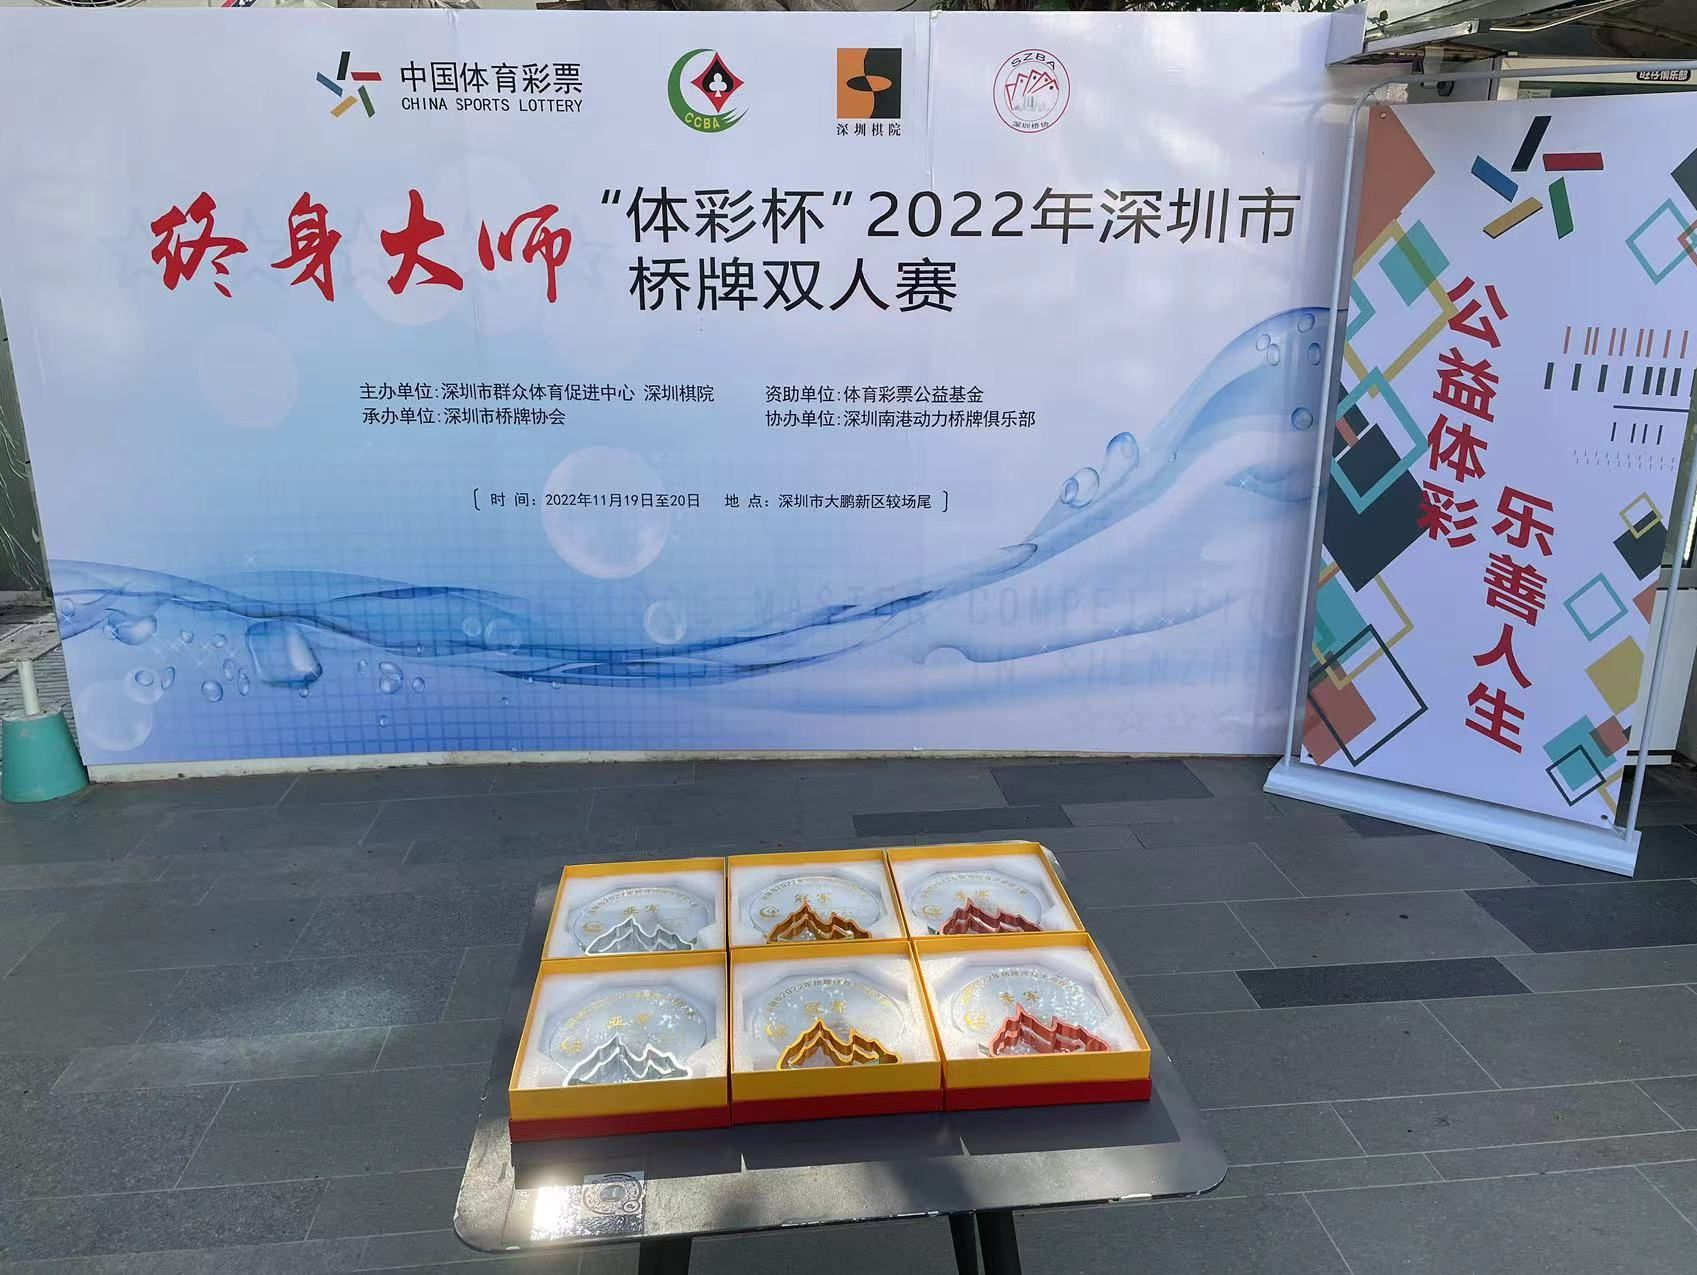 深圳市桥牌终身大师双人赛举行 过晓风、胡甦夺冠